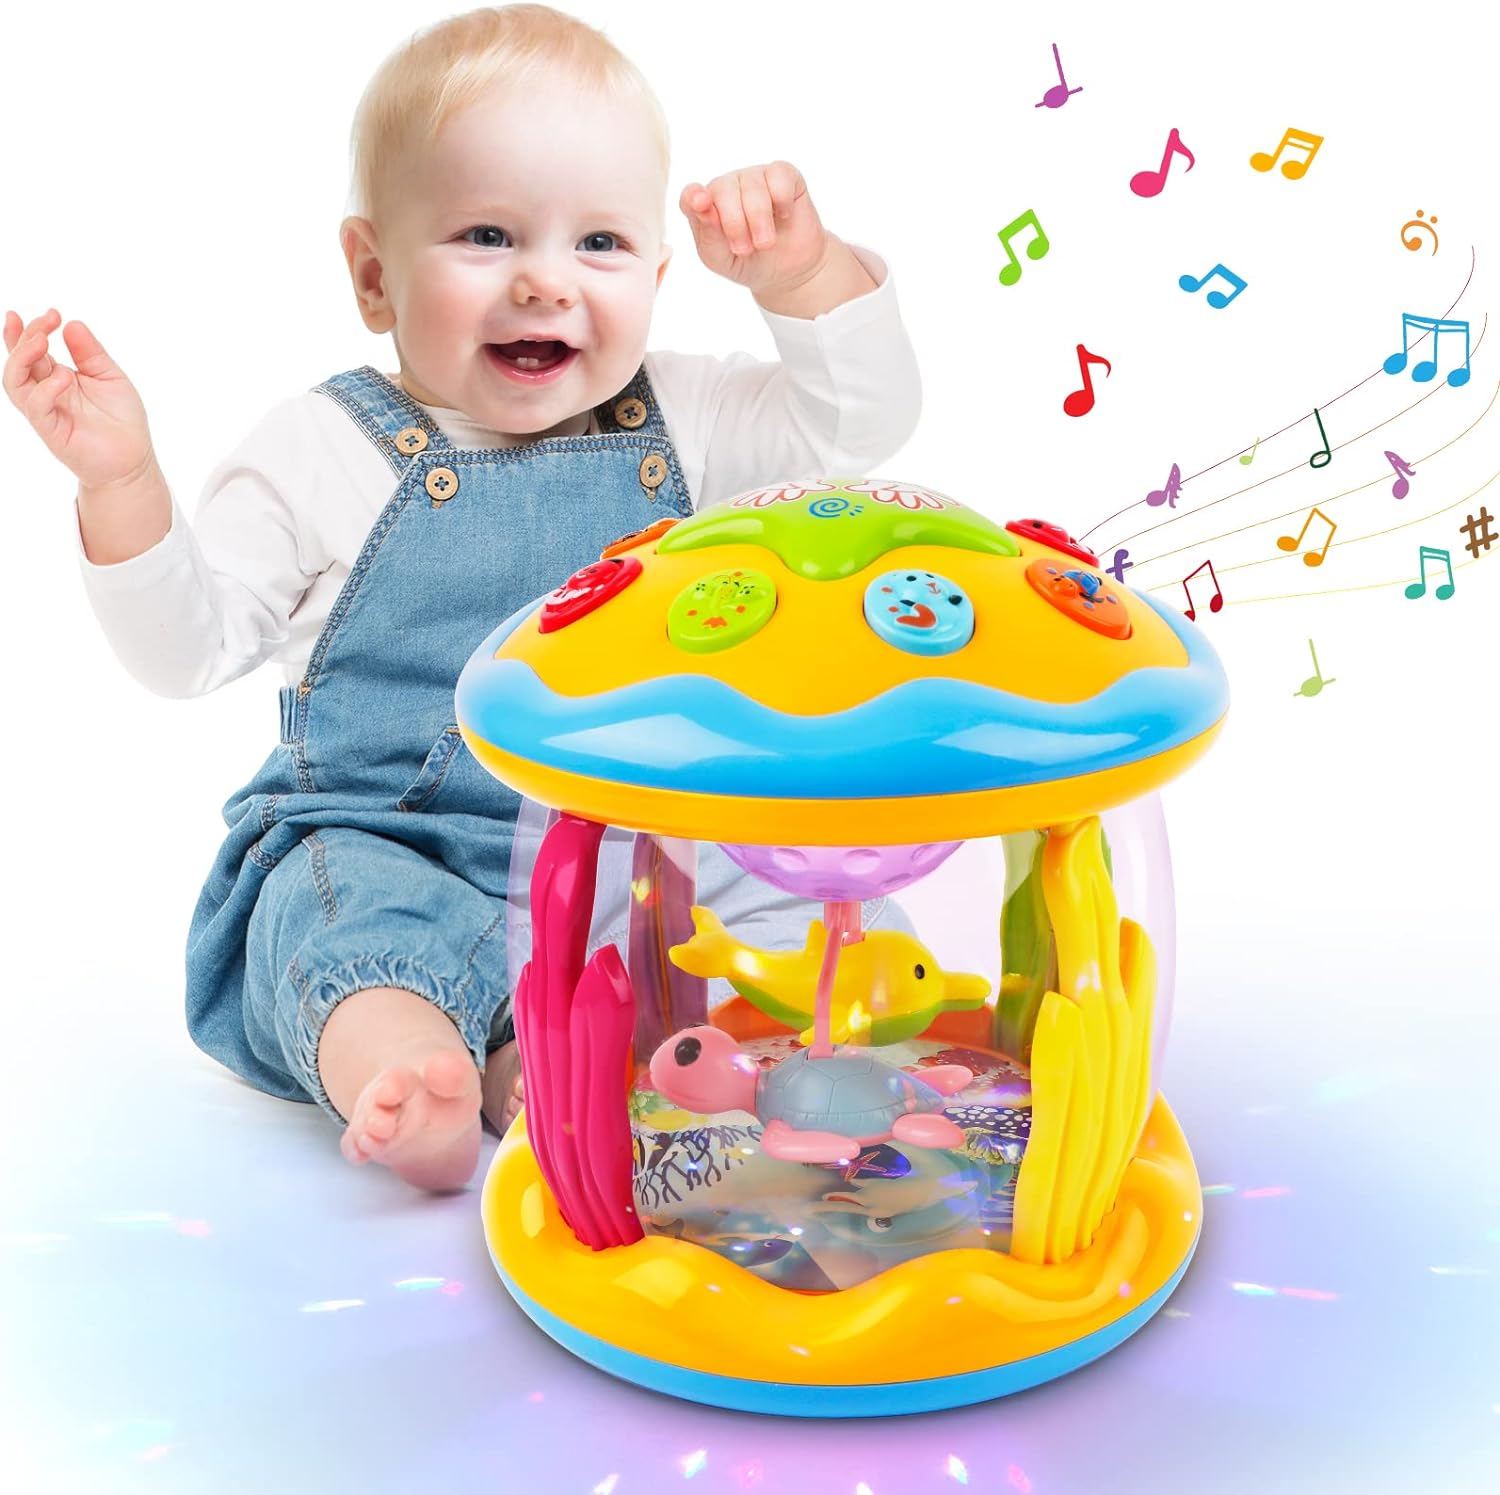 Bébé voiture bébé jouets 9-12 mois bébé hochet